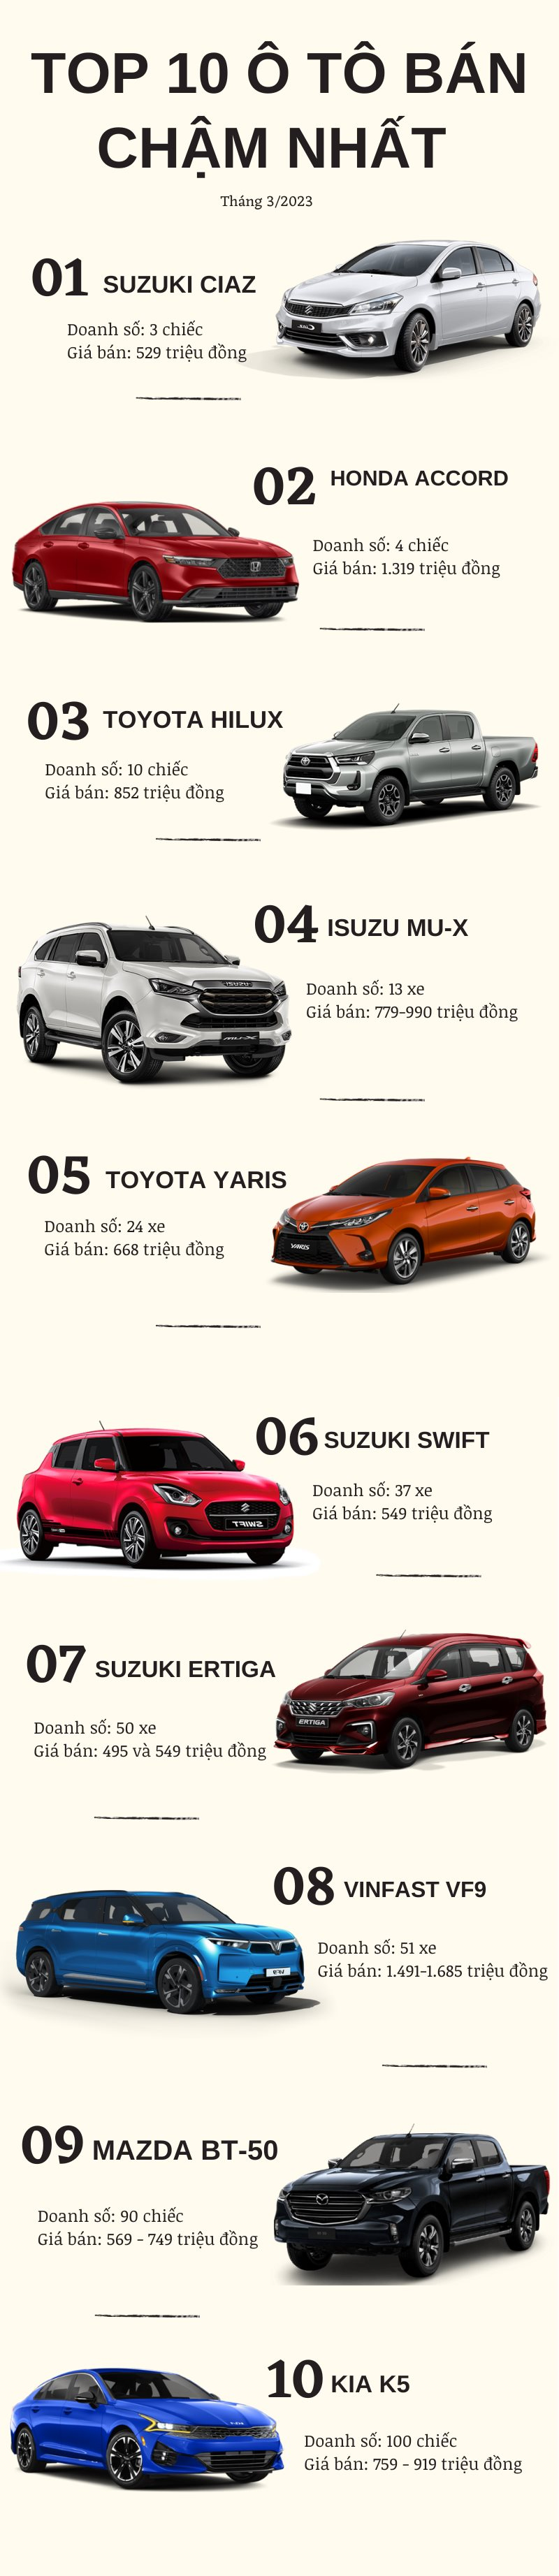 Top 10 ô tô bán chậm tháng 3/2023: Suzuki, Toyota chiếm đa số - Ảnh 2.